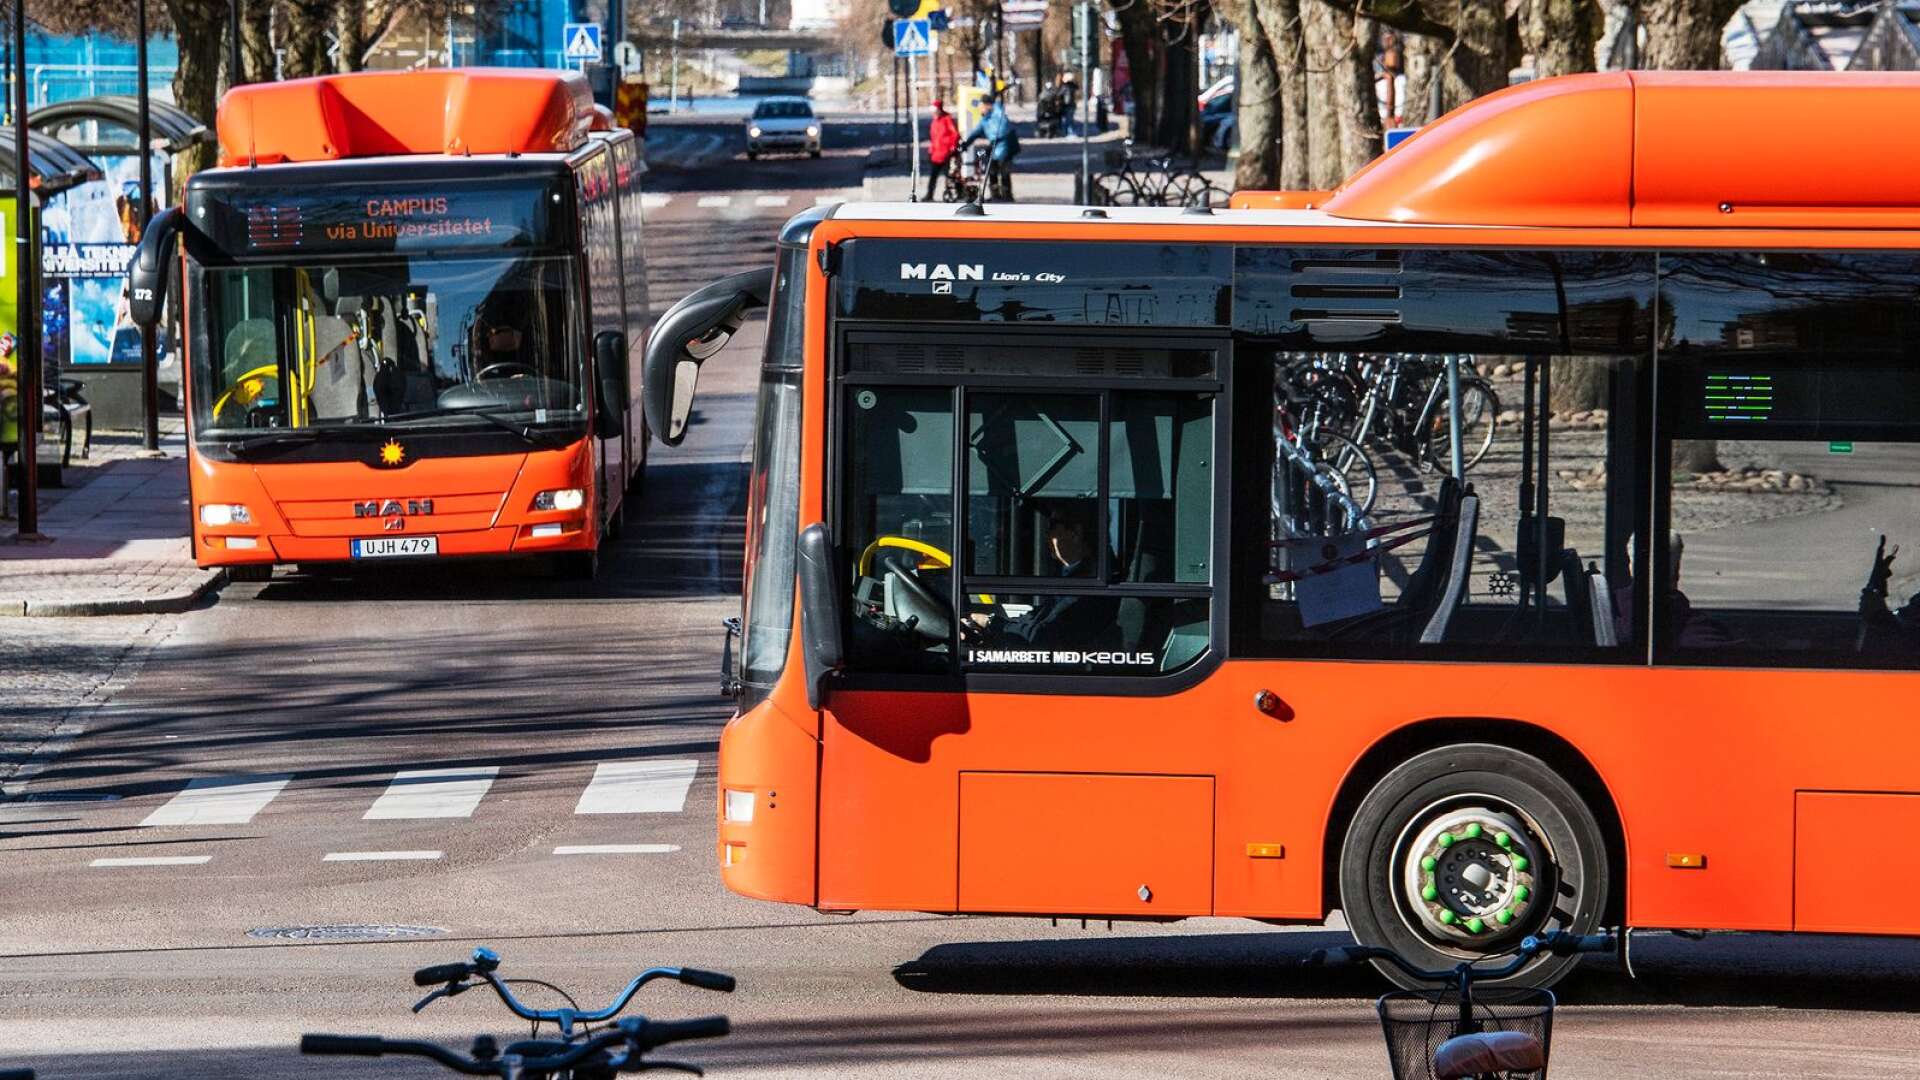 Vi vill utveckla Karlstads busstrafik genom att fortsätta bygga ut snabbusslinjen och förbättra bussarnas framkomlighet i stadstrafiken med prioriterade busstråk och hög turtäthet, skriver Monika Bubholz.